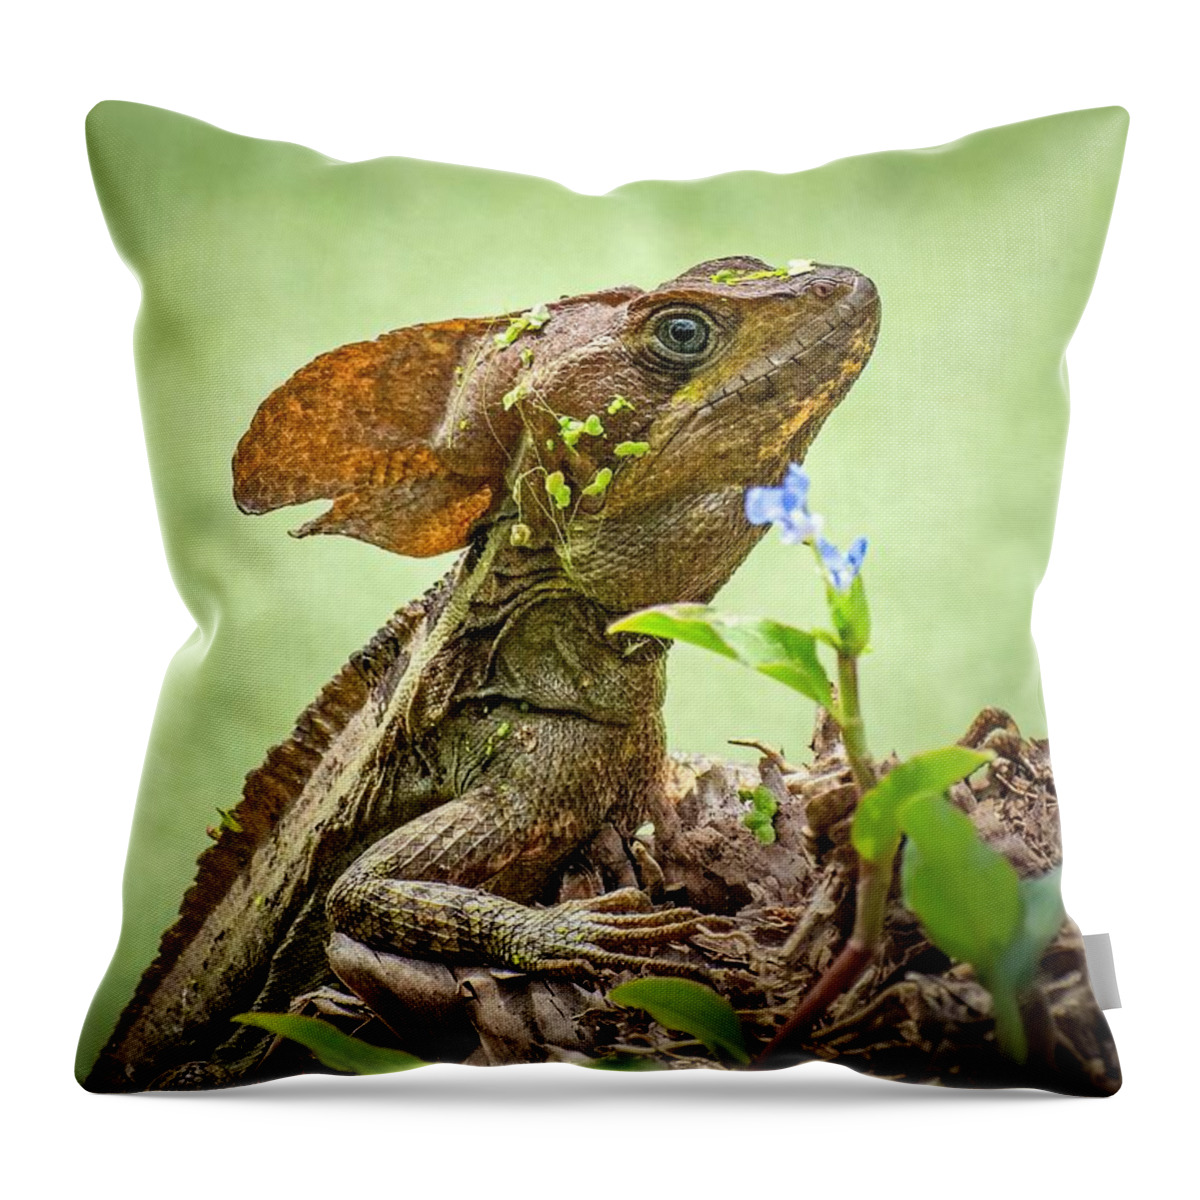 Jesus Christ Lizard Throw Pillow featuring the photograph Jesus Christ Lizard II by Rebecca Herranen